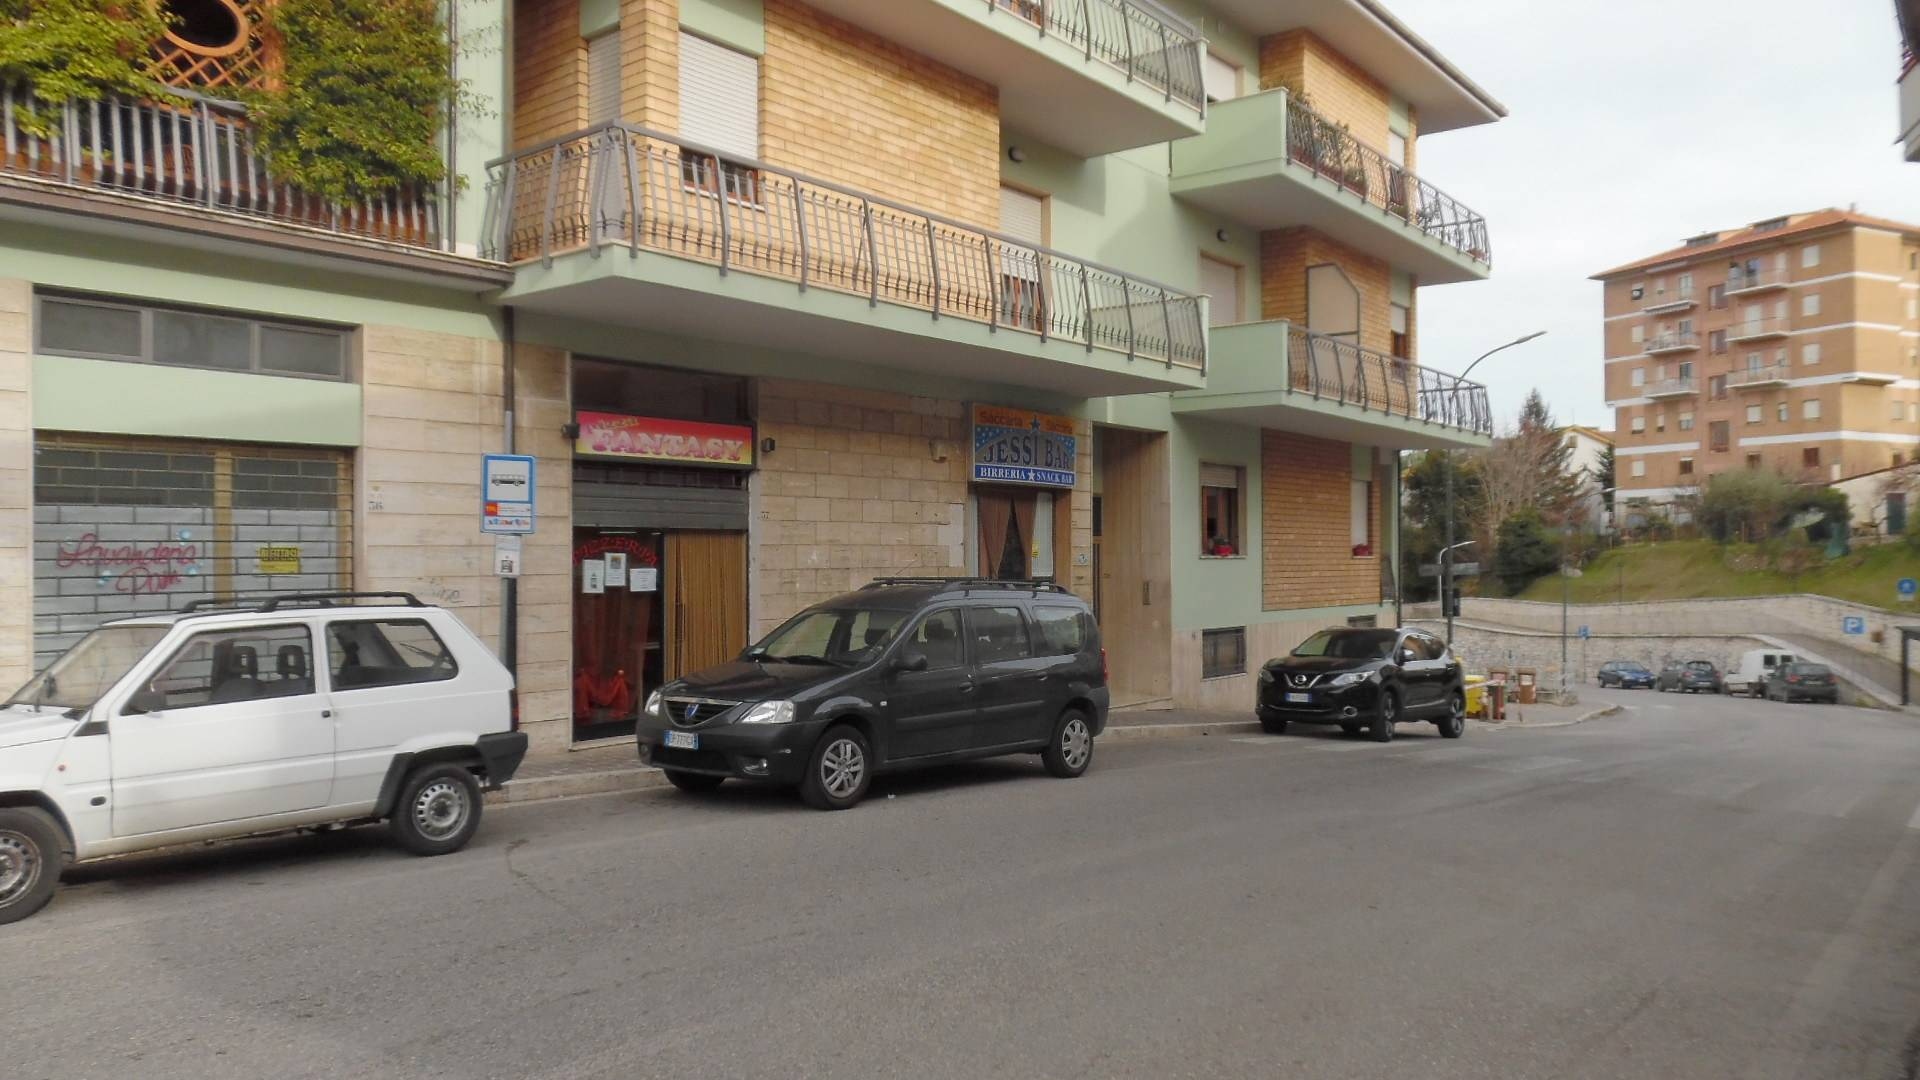 Negozio / Locale in vendita a Folignano, 9999 locali, prezzo € 60.000 | PortaleAgenzieImmobiliari.it